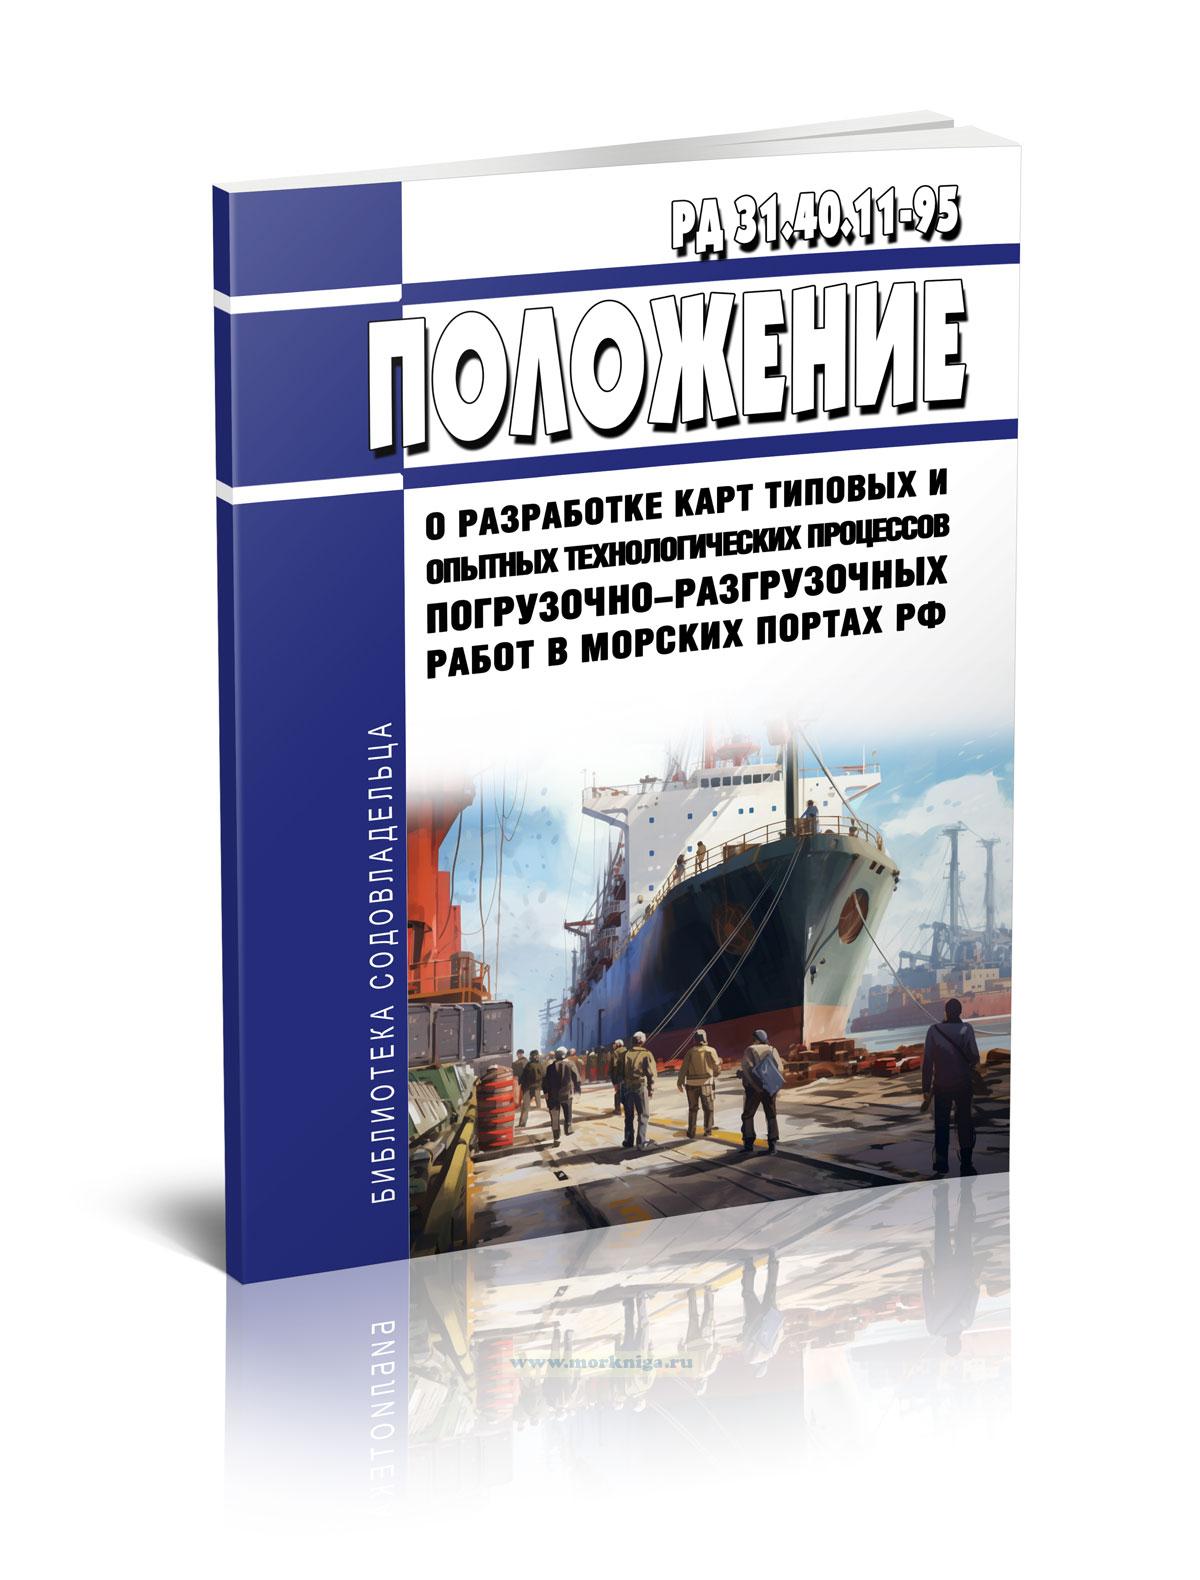 РД 31.40.11-95 Положение о разработке карт типовых и опытных технологических процессов погрузочно-разгрузочных работ в морских портах Российской Федерации